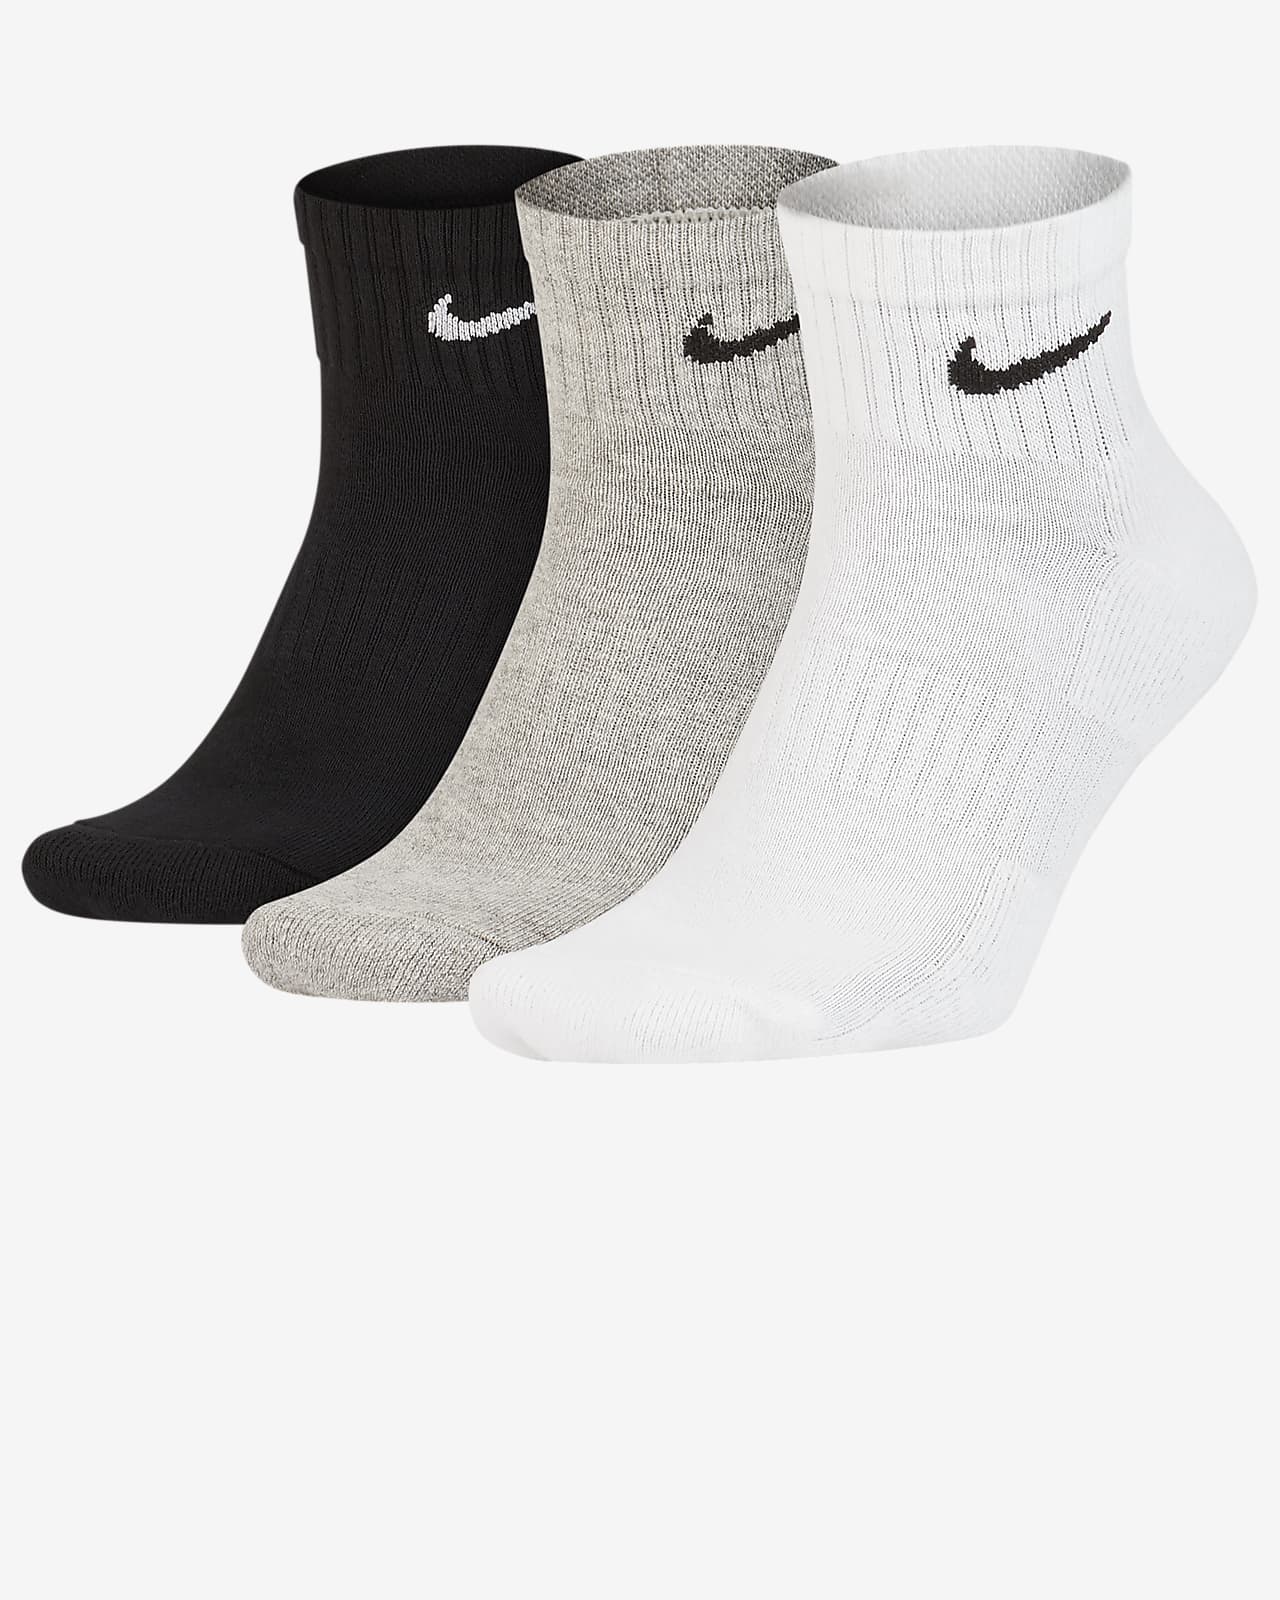 black tall nike socks